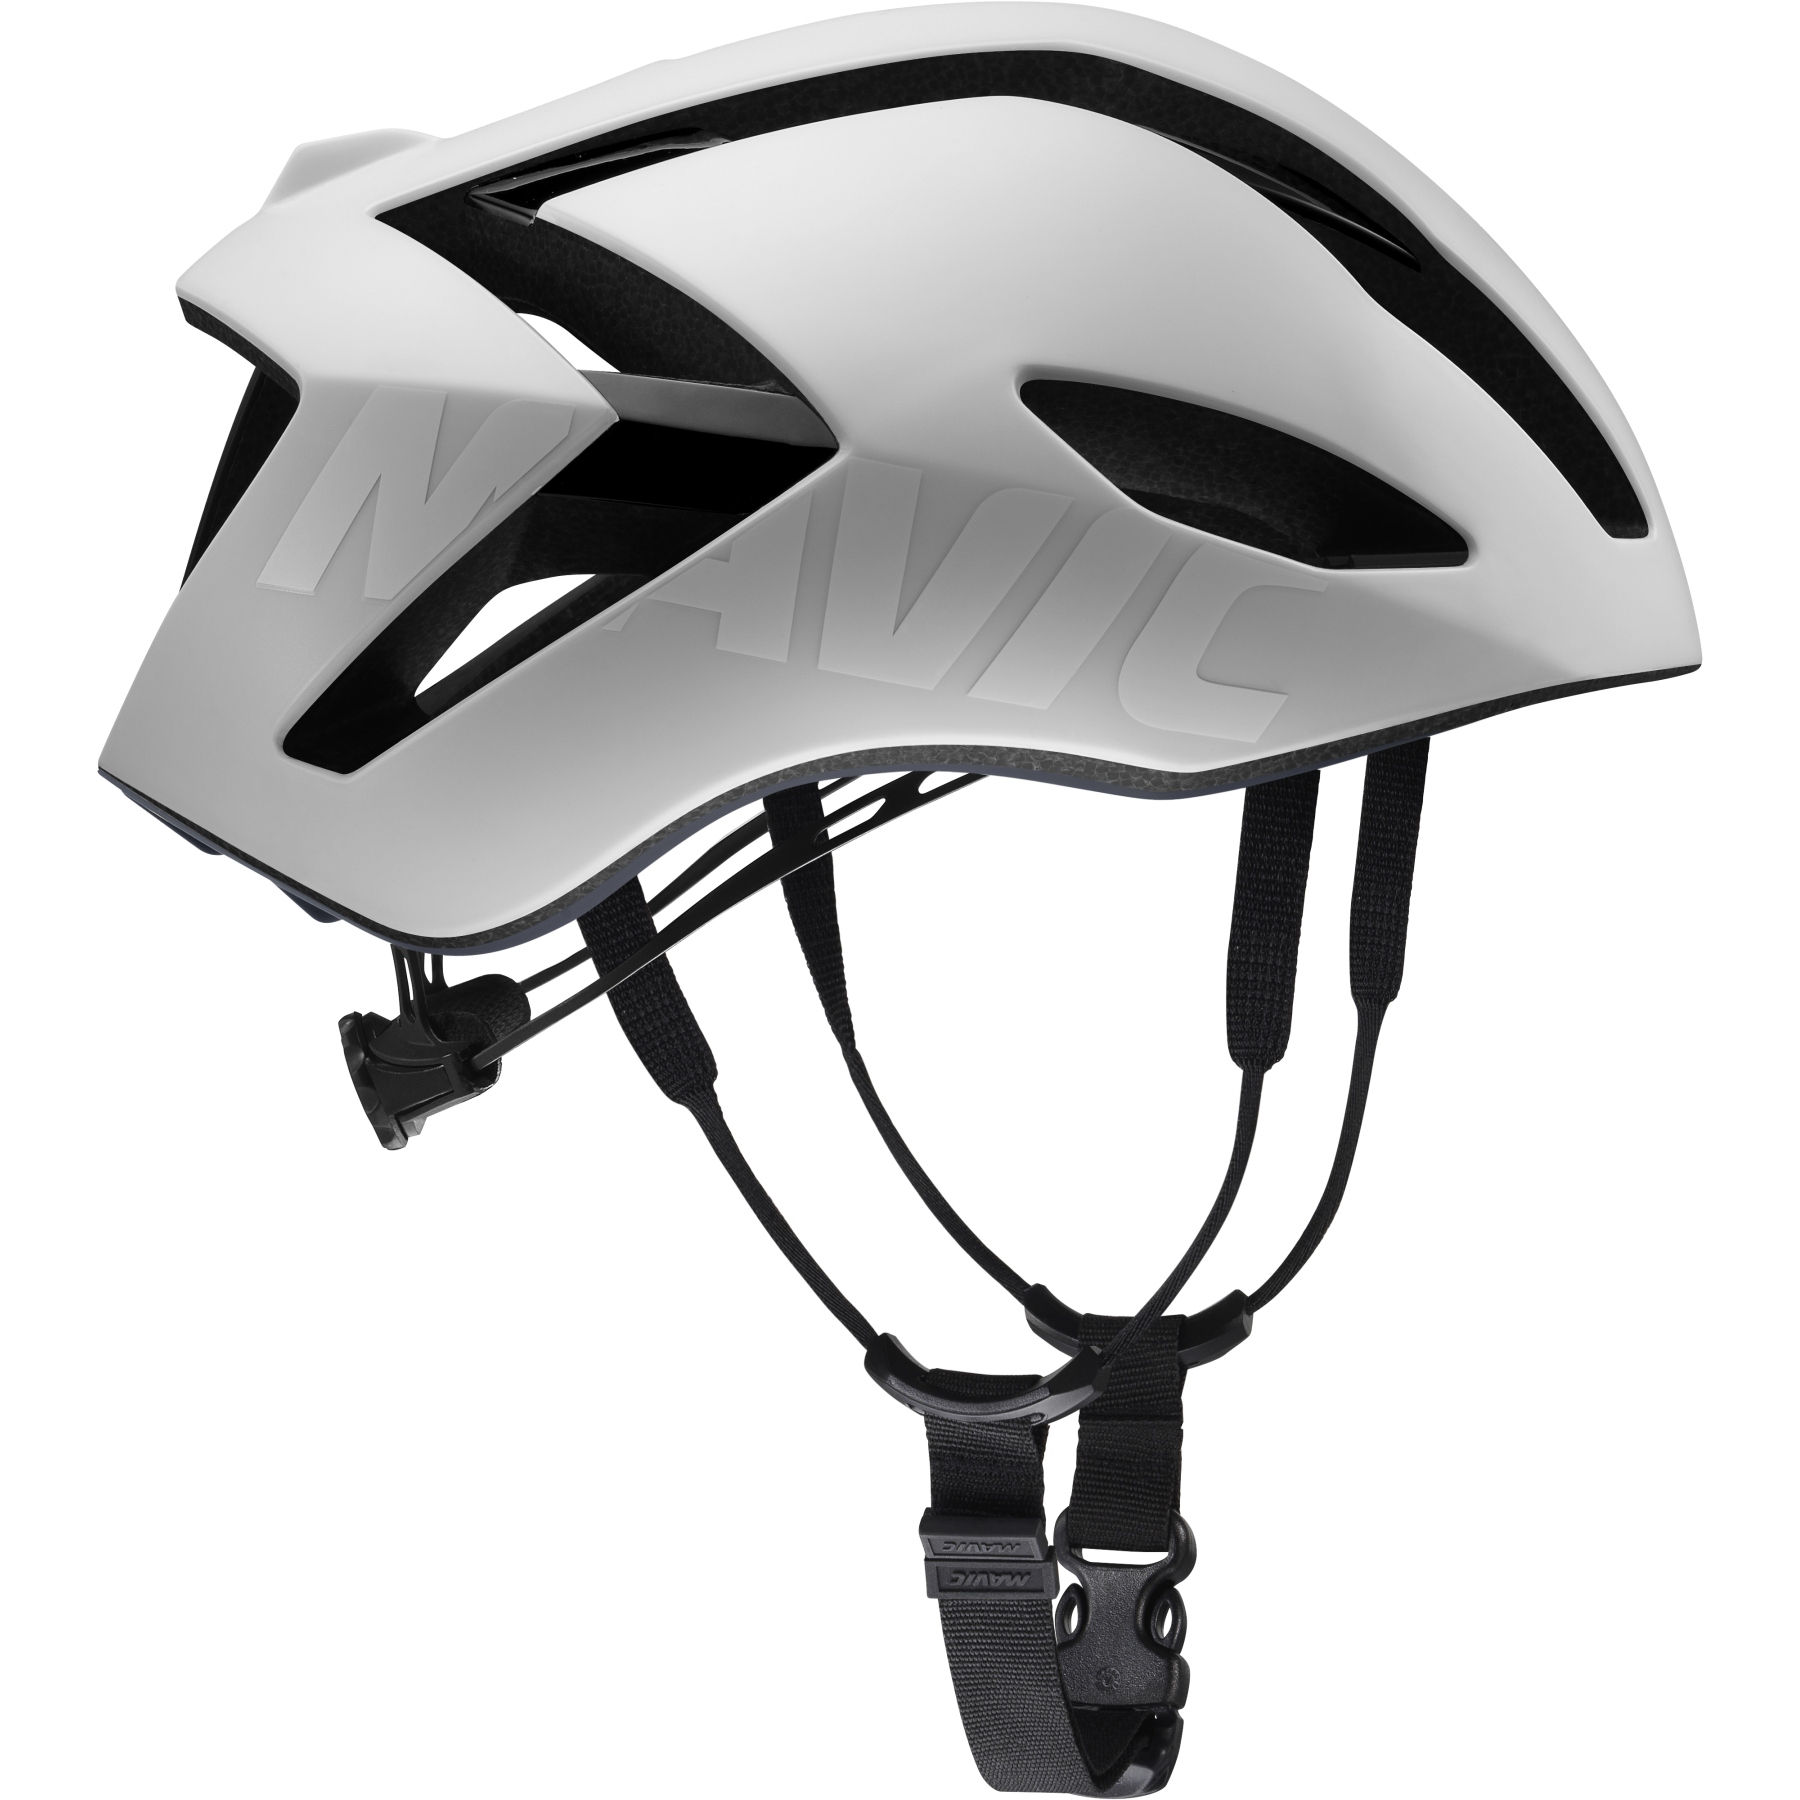 Picture of Mavic Comete Ultimate MIPS Helmet - white/black